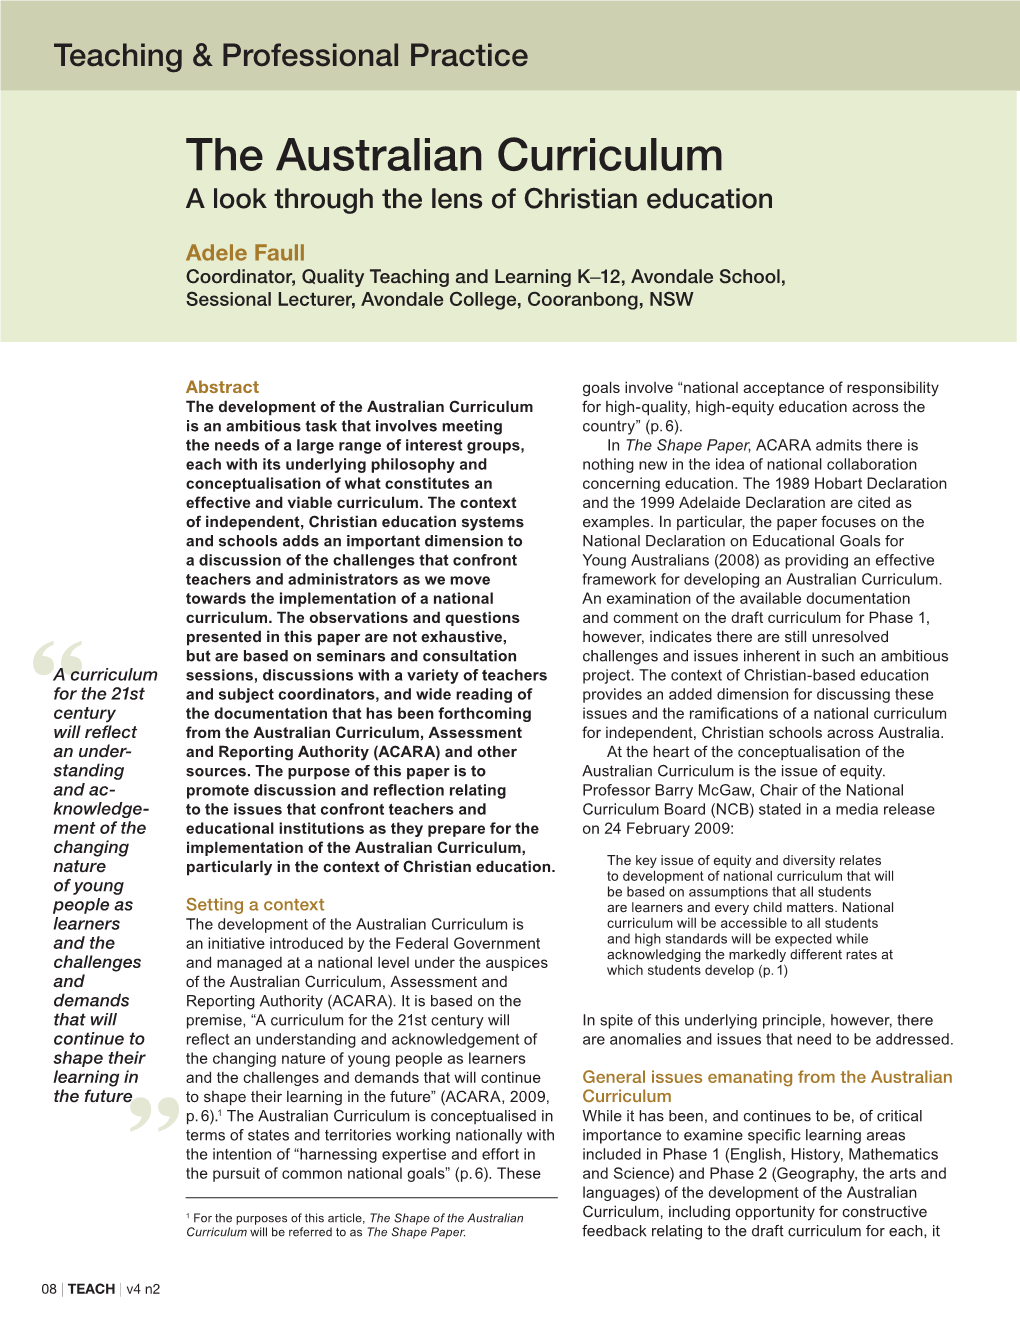 The Australian Curriculum a Look Through the Lens of Christian Education